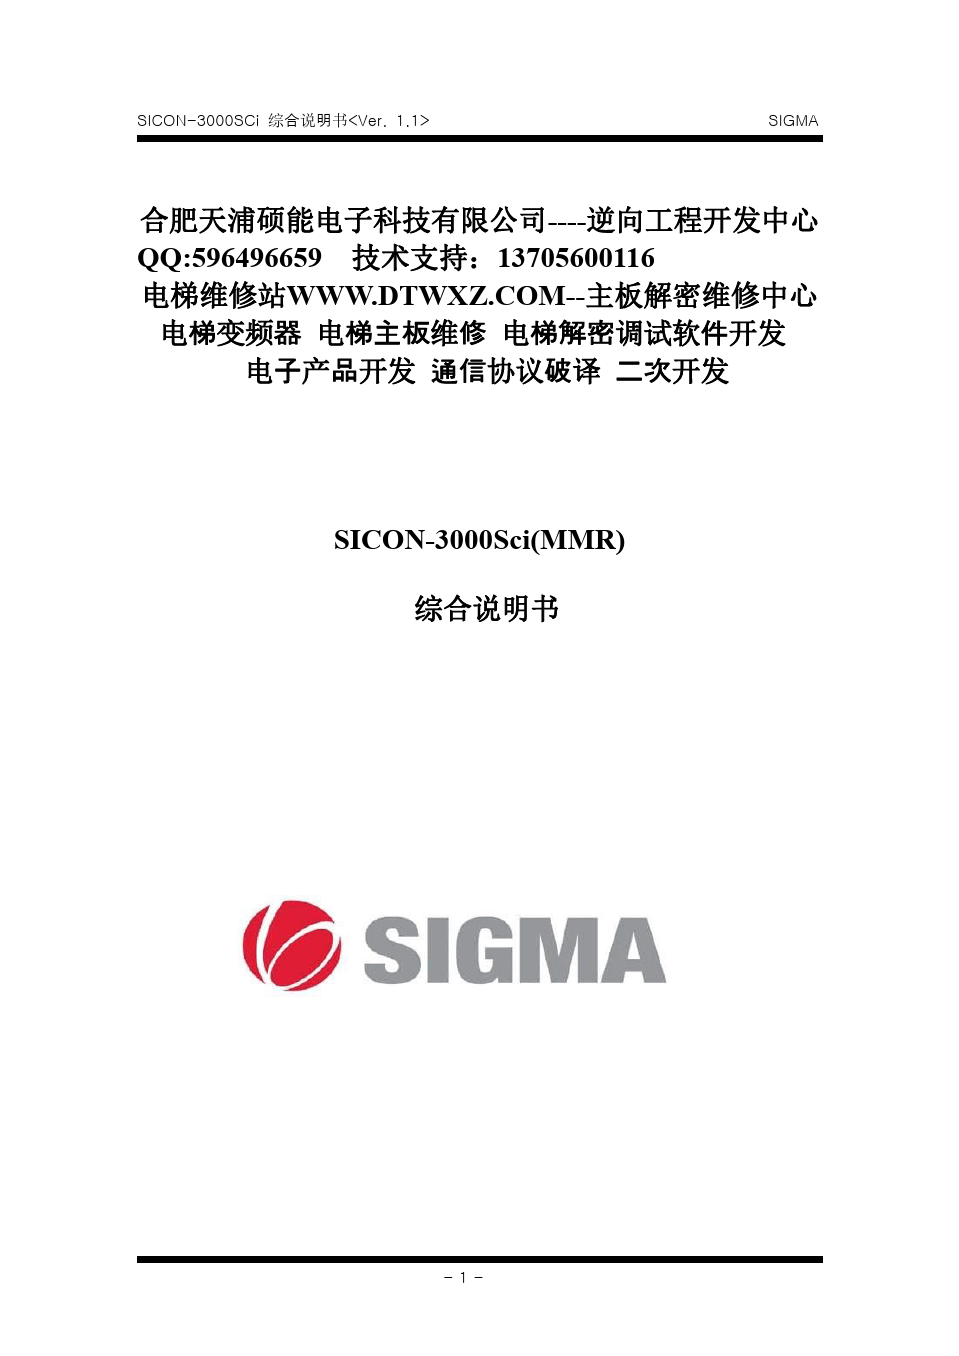 SICON-3000SCi_2003 大连星玛电梯调试